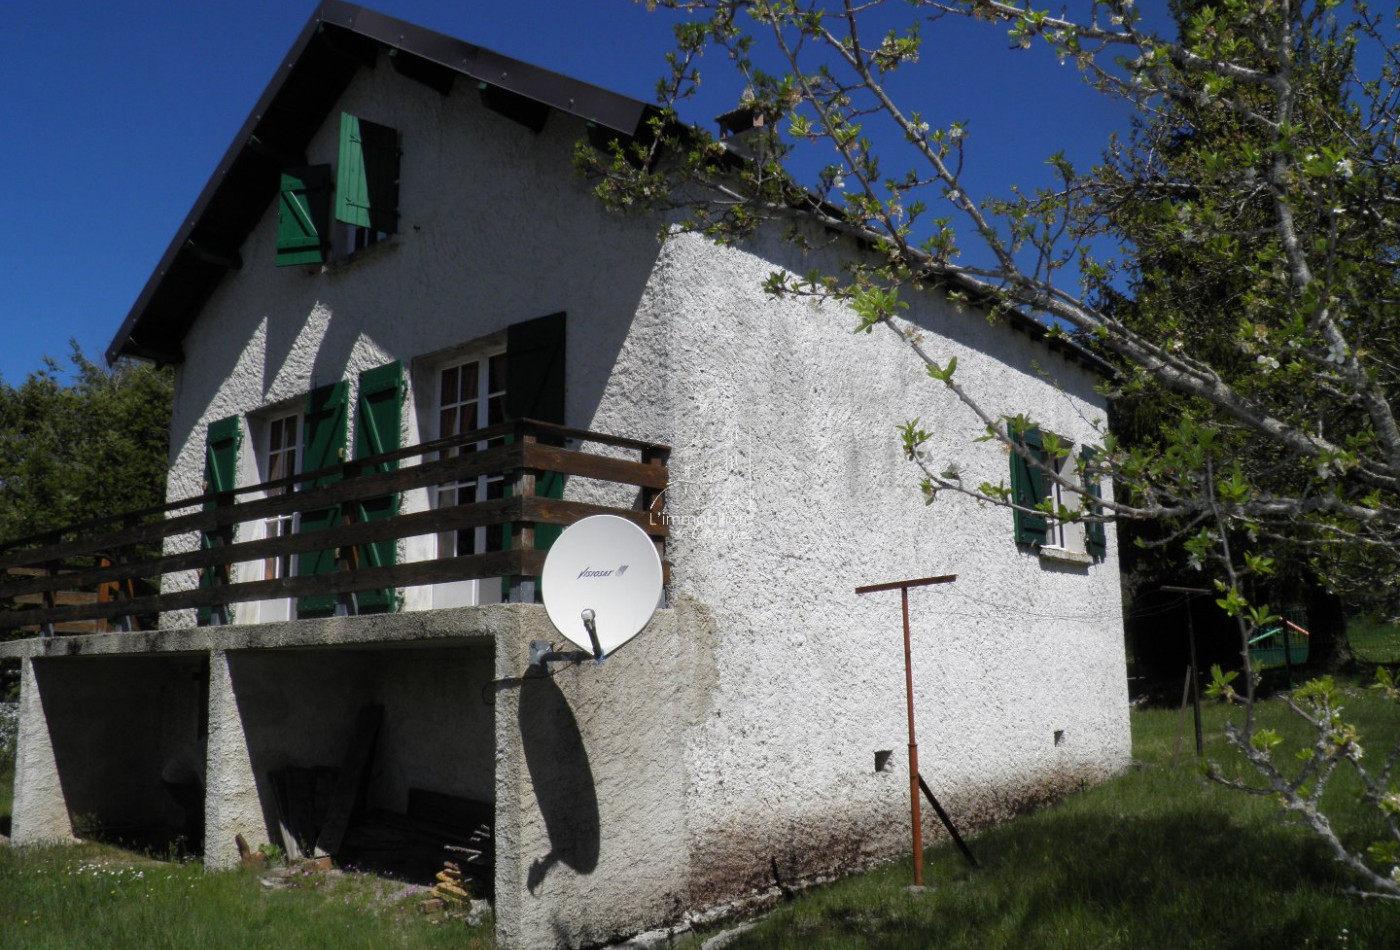 vente Maison de village Saint Sauveur Camprieu